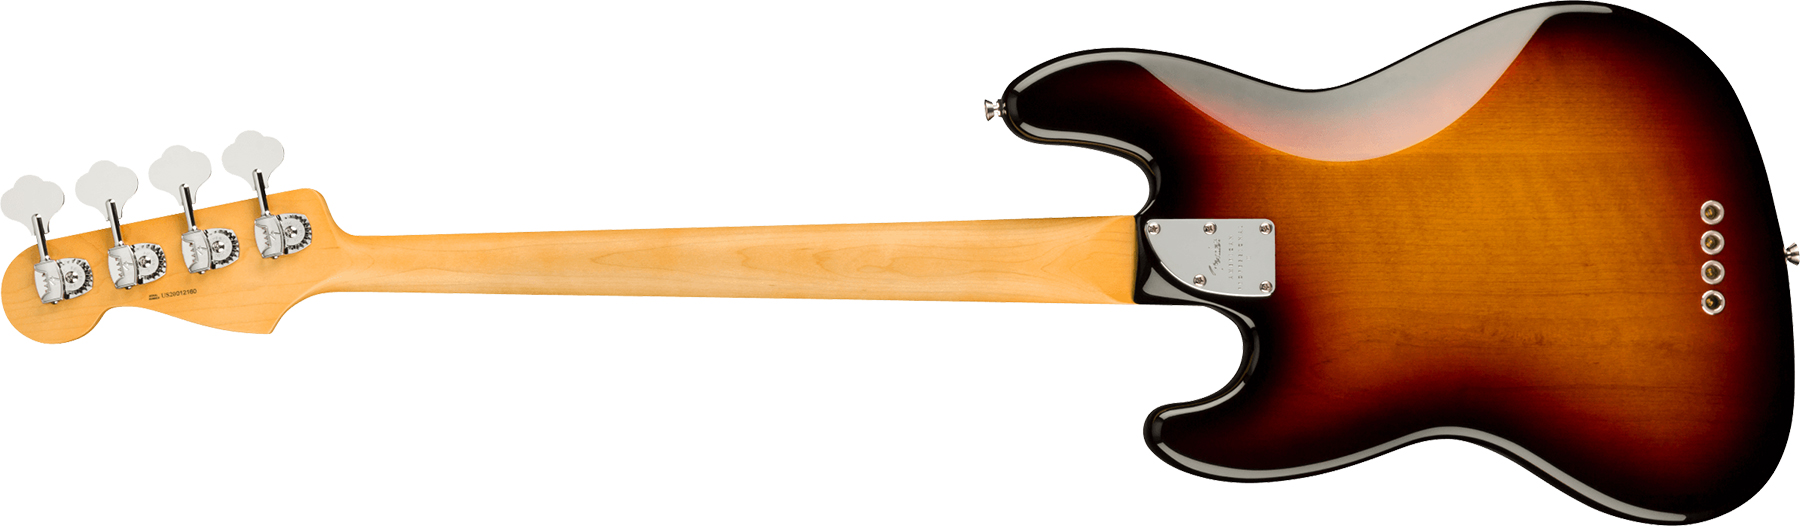 Fender Jazz Bass American Professional Ii Lh Gaucher Usa Rw - 3-color Sunburst - Solid body elektrische bas - Variation 1